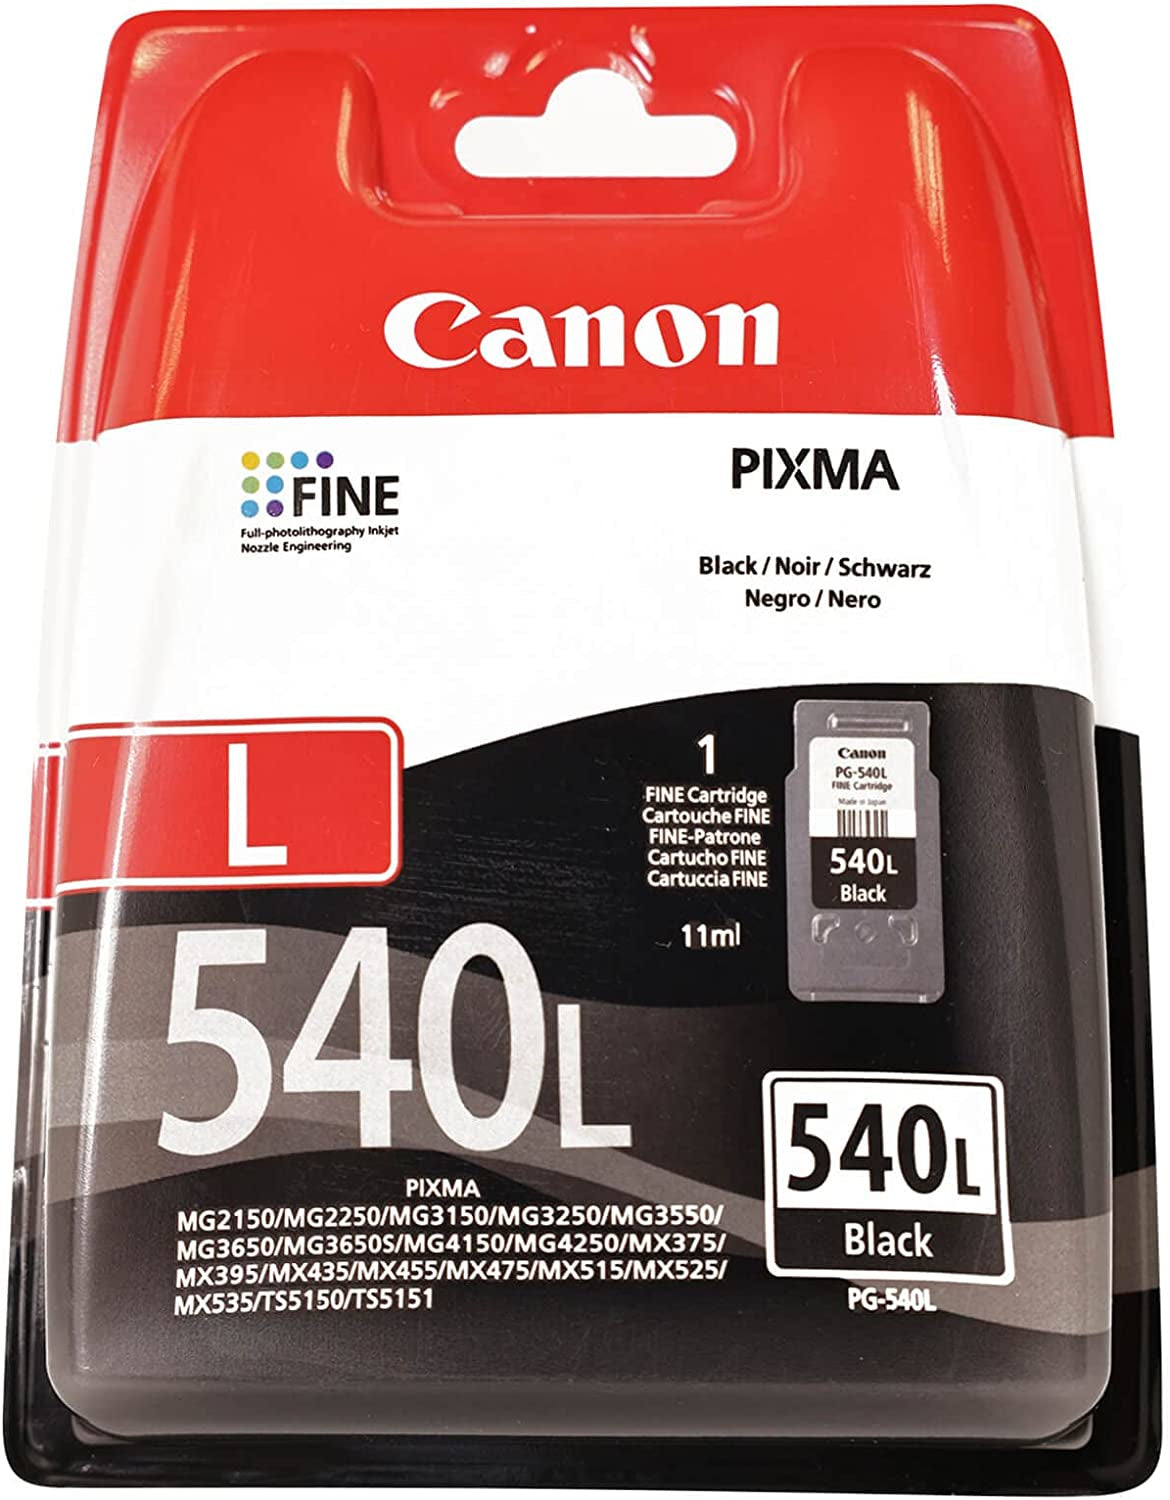 Canon pixma ts 3150 noire + cartouche canon pg 545 noir CANON